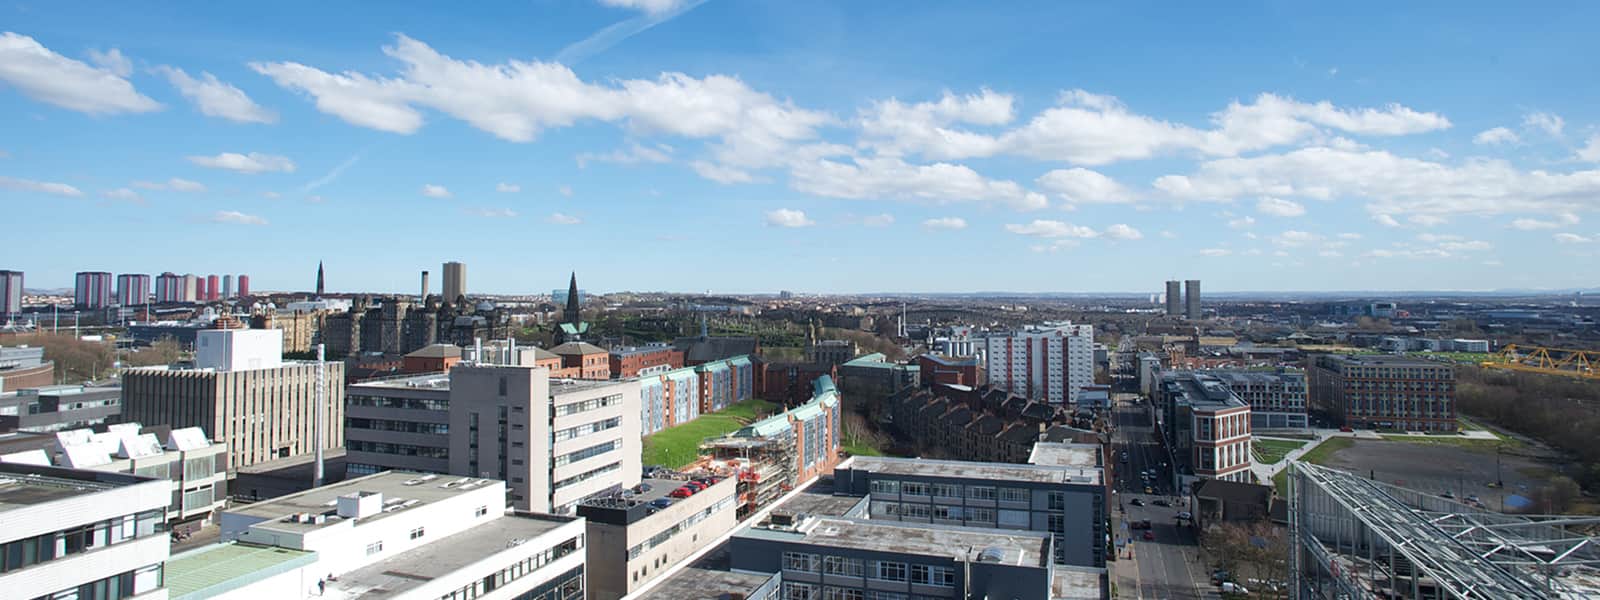 Bird's eye view of Glasgow